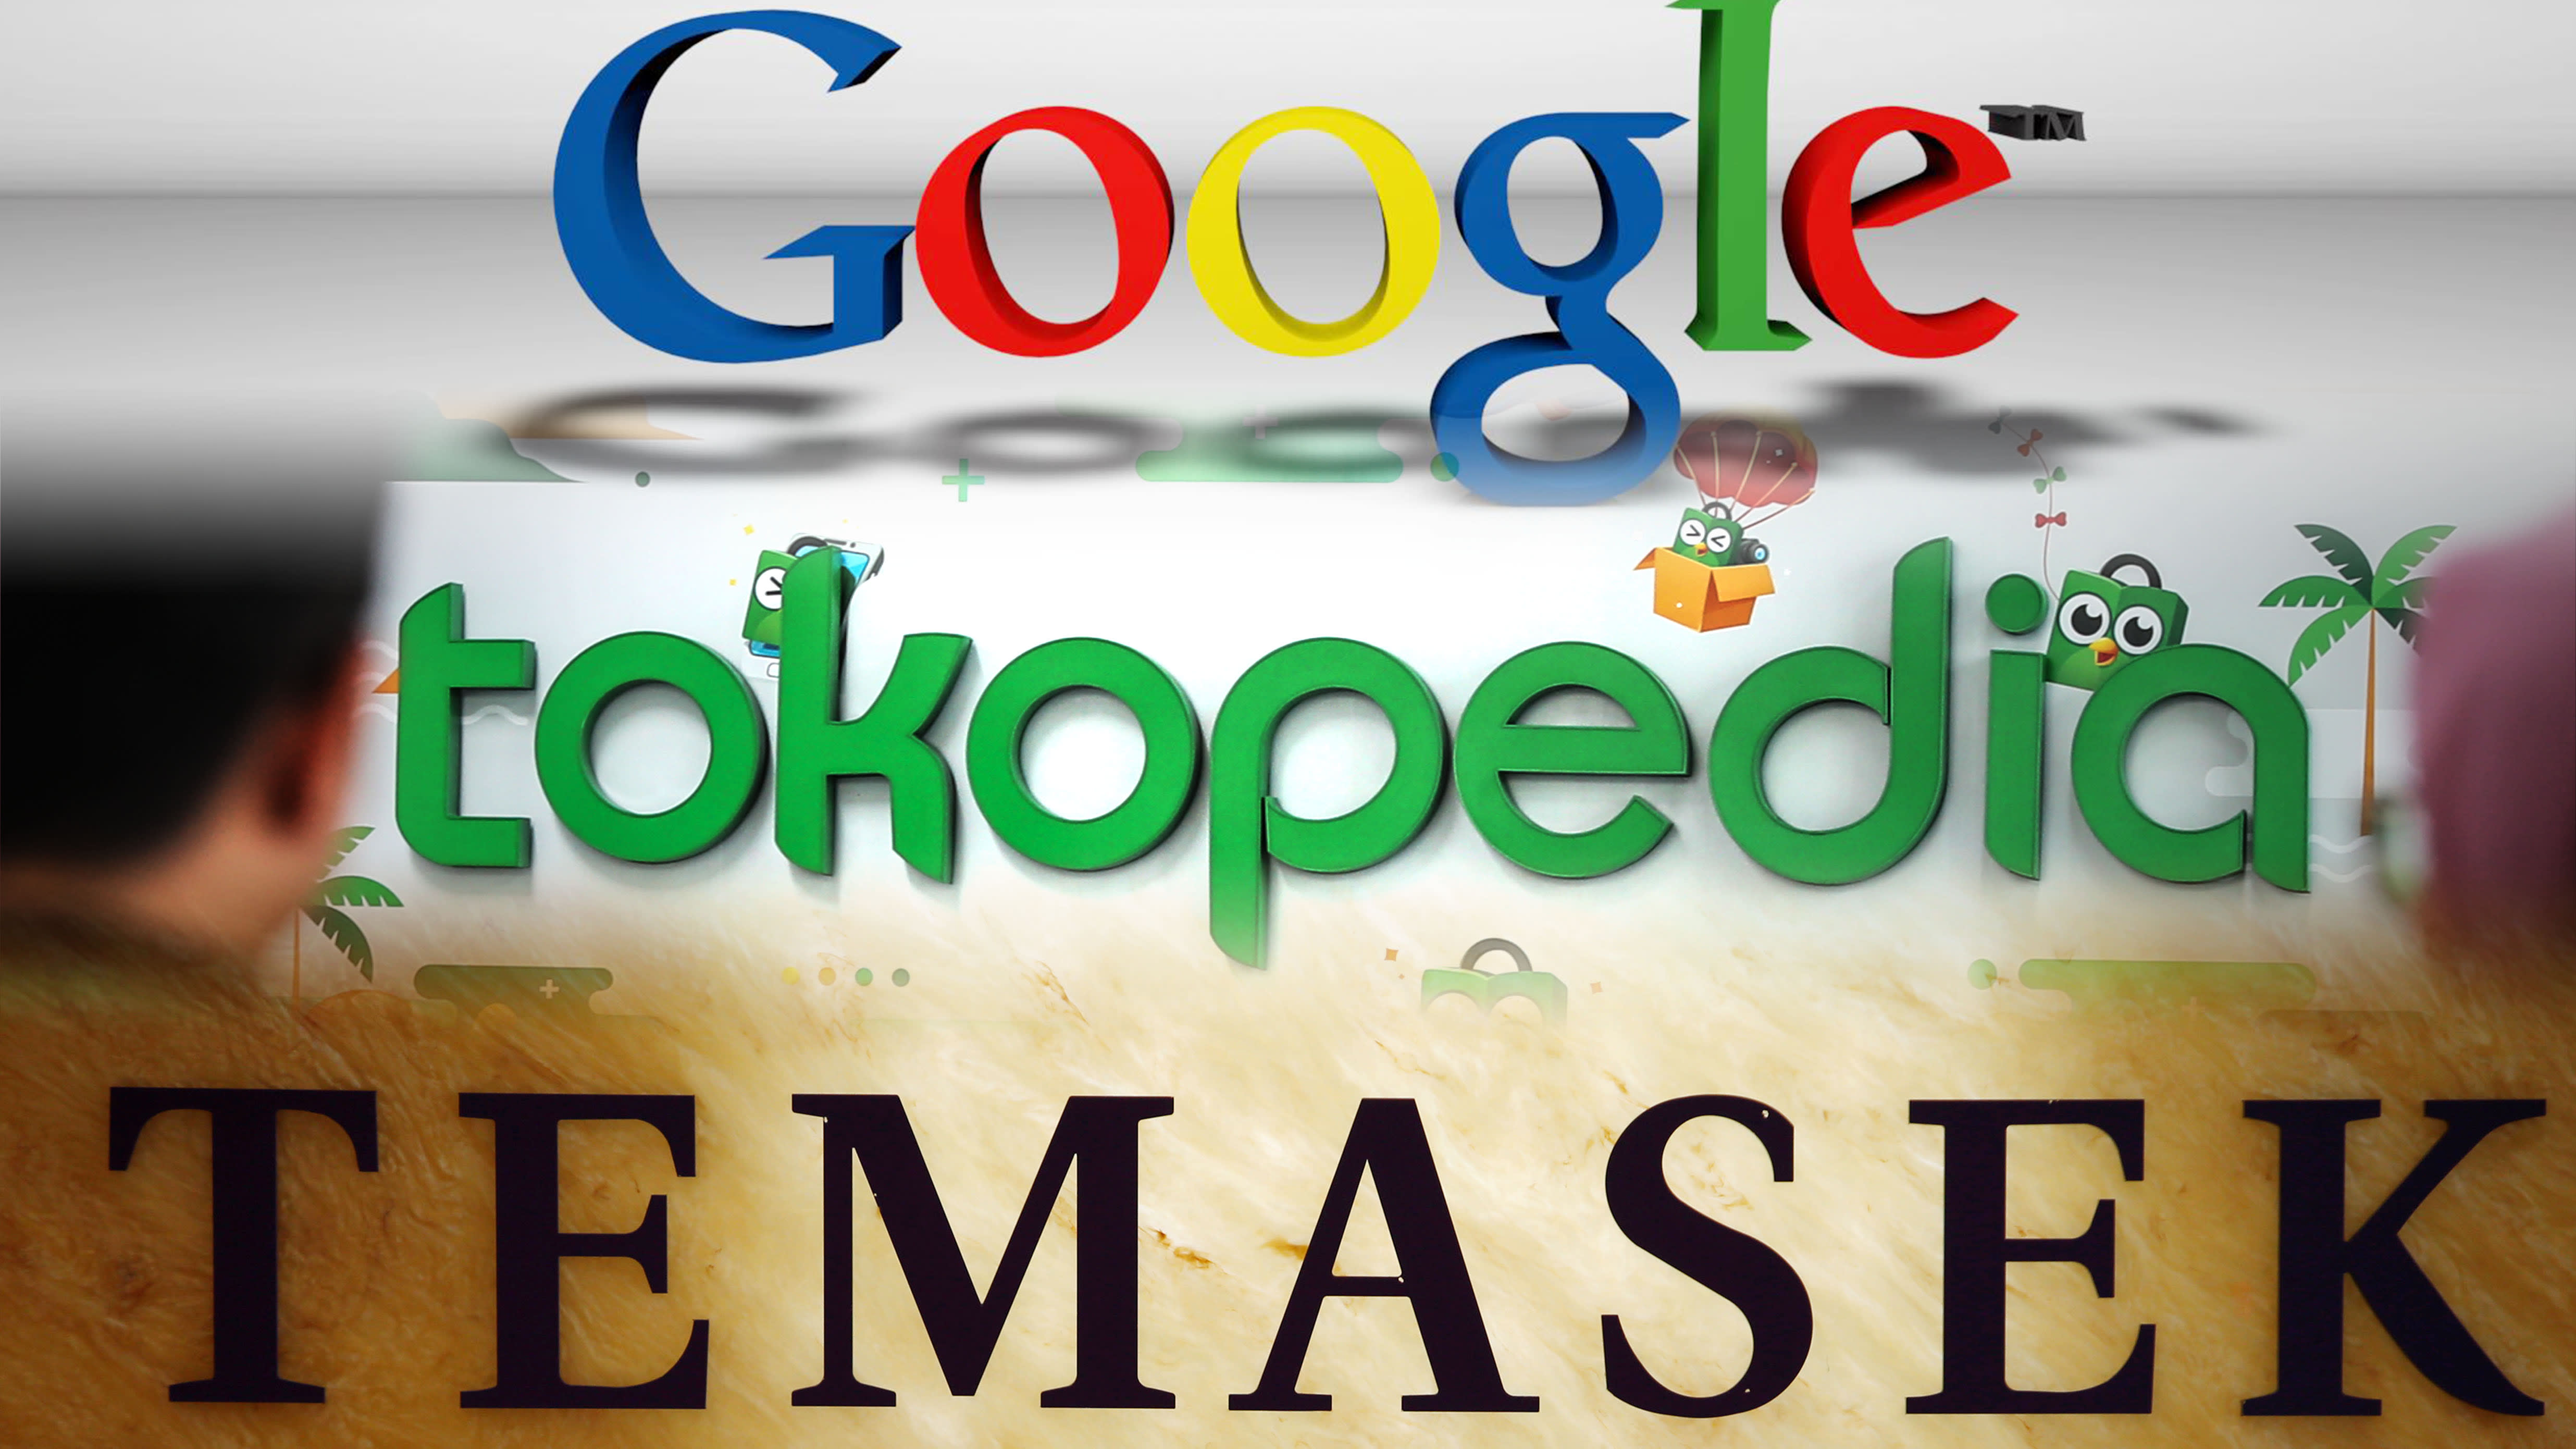 Google และ Temasek เข้าถือหุ้น Tokopedia อีคอมเมิร์ซรายใหญ่ของอินโดนีเซีย